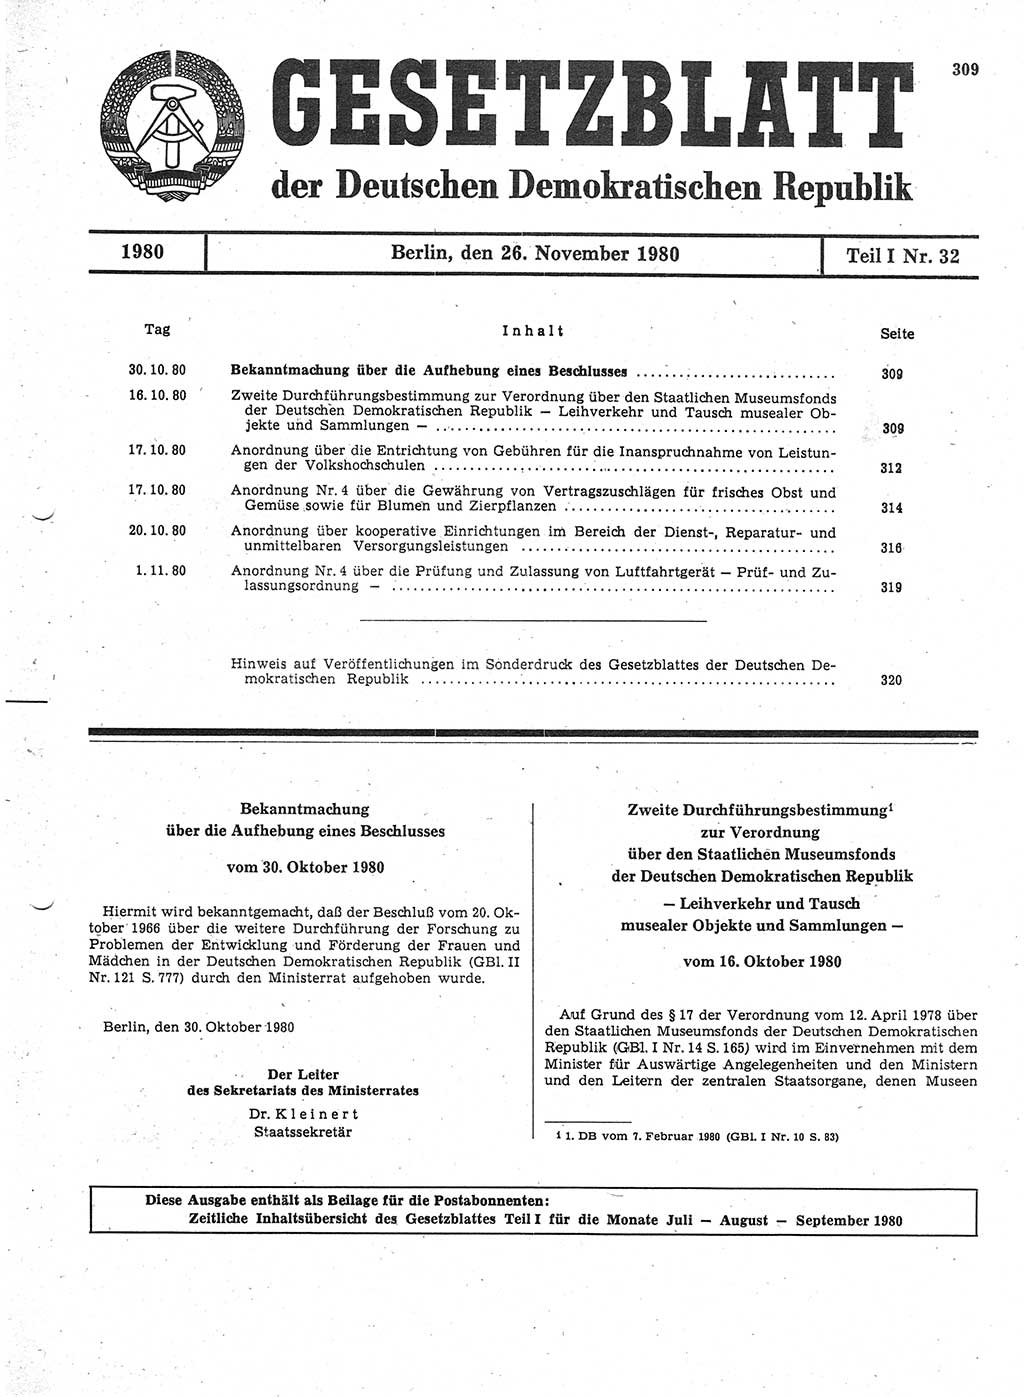 Gesetzblatt (GBl.) der Deutschen Demokratischen Republik (DDR) Teil Ⅰ 1980, Seite 309 (GBl. DDR Ⅰ 1980, S. 309)